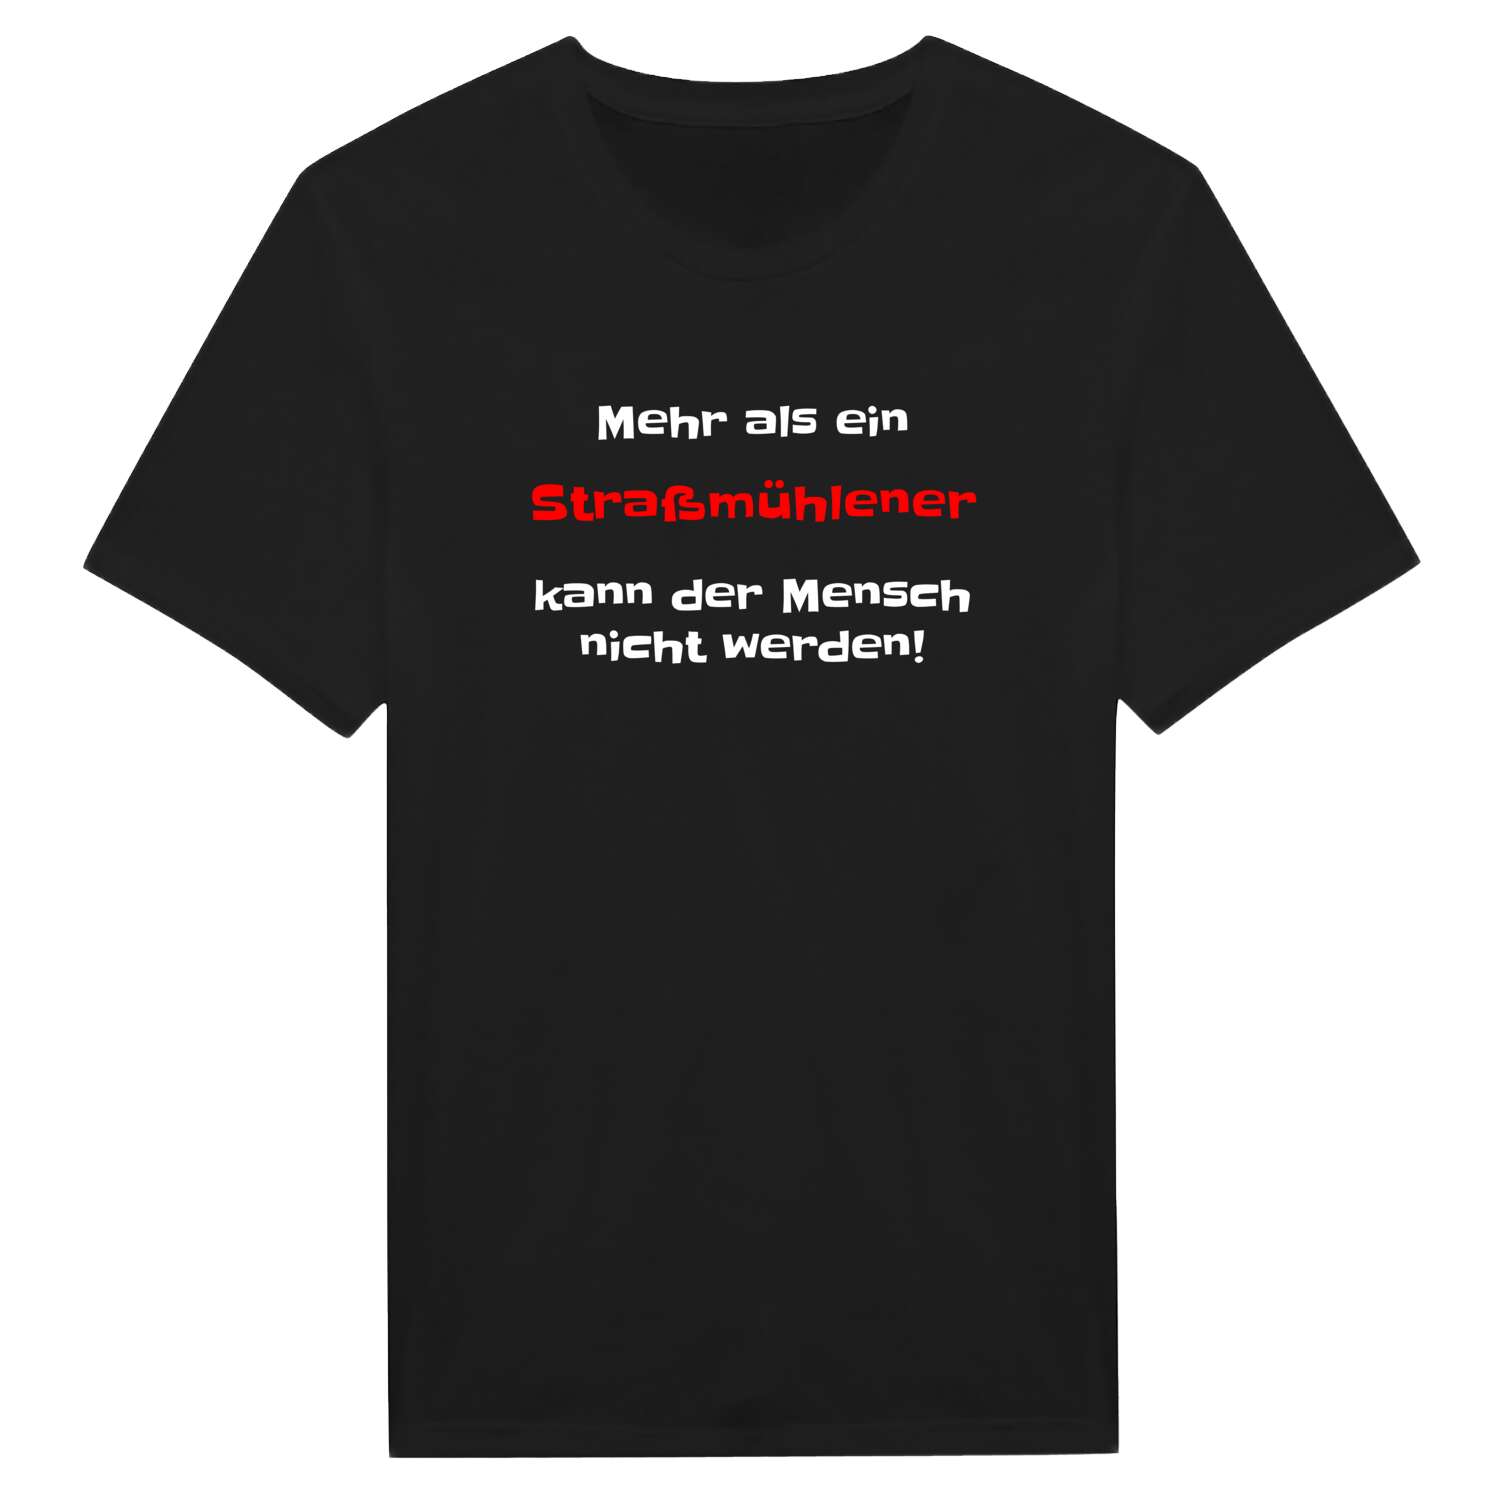 Straßmühle T-Shirt »Mehr als ein«